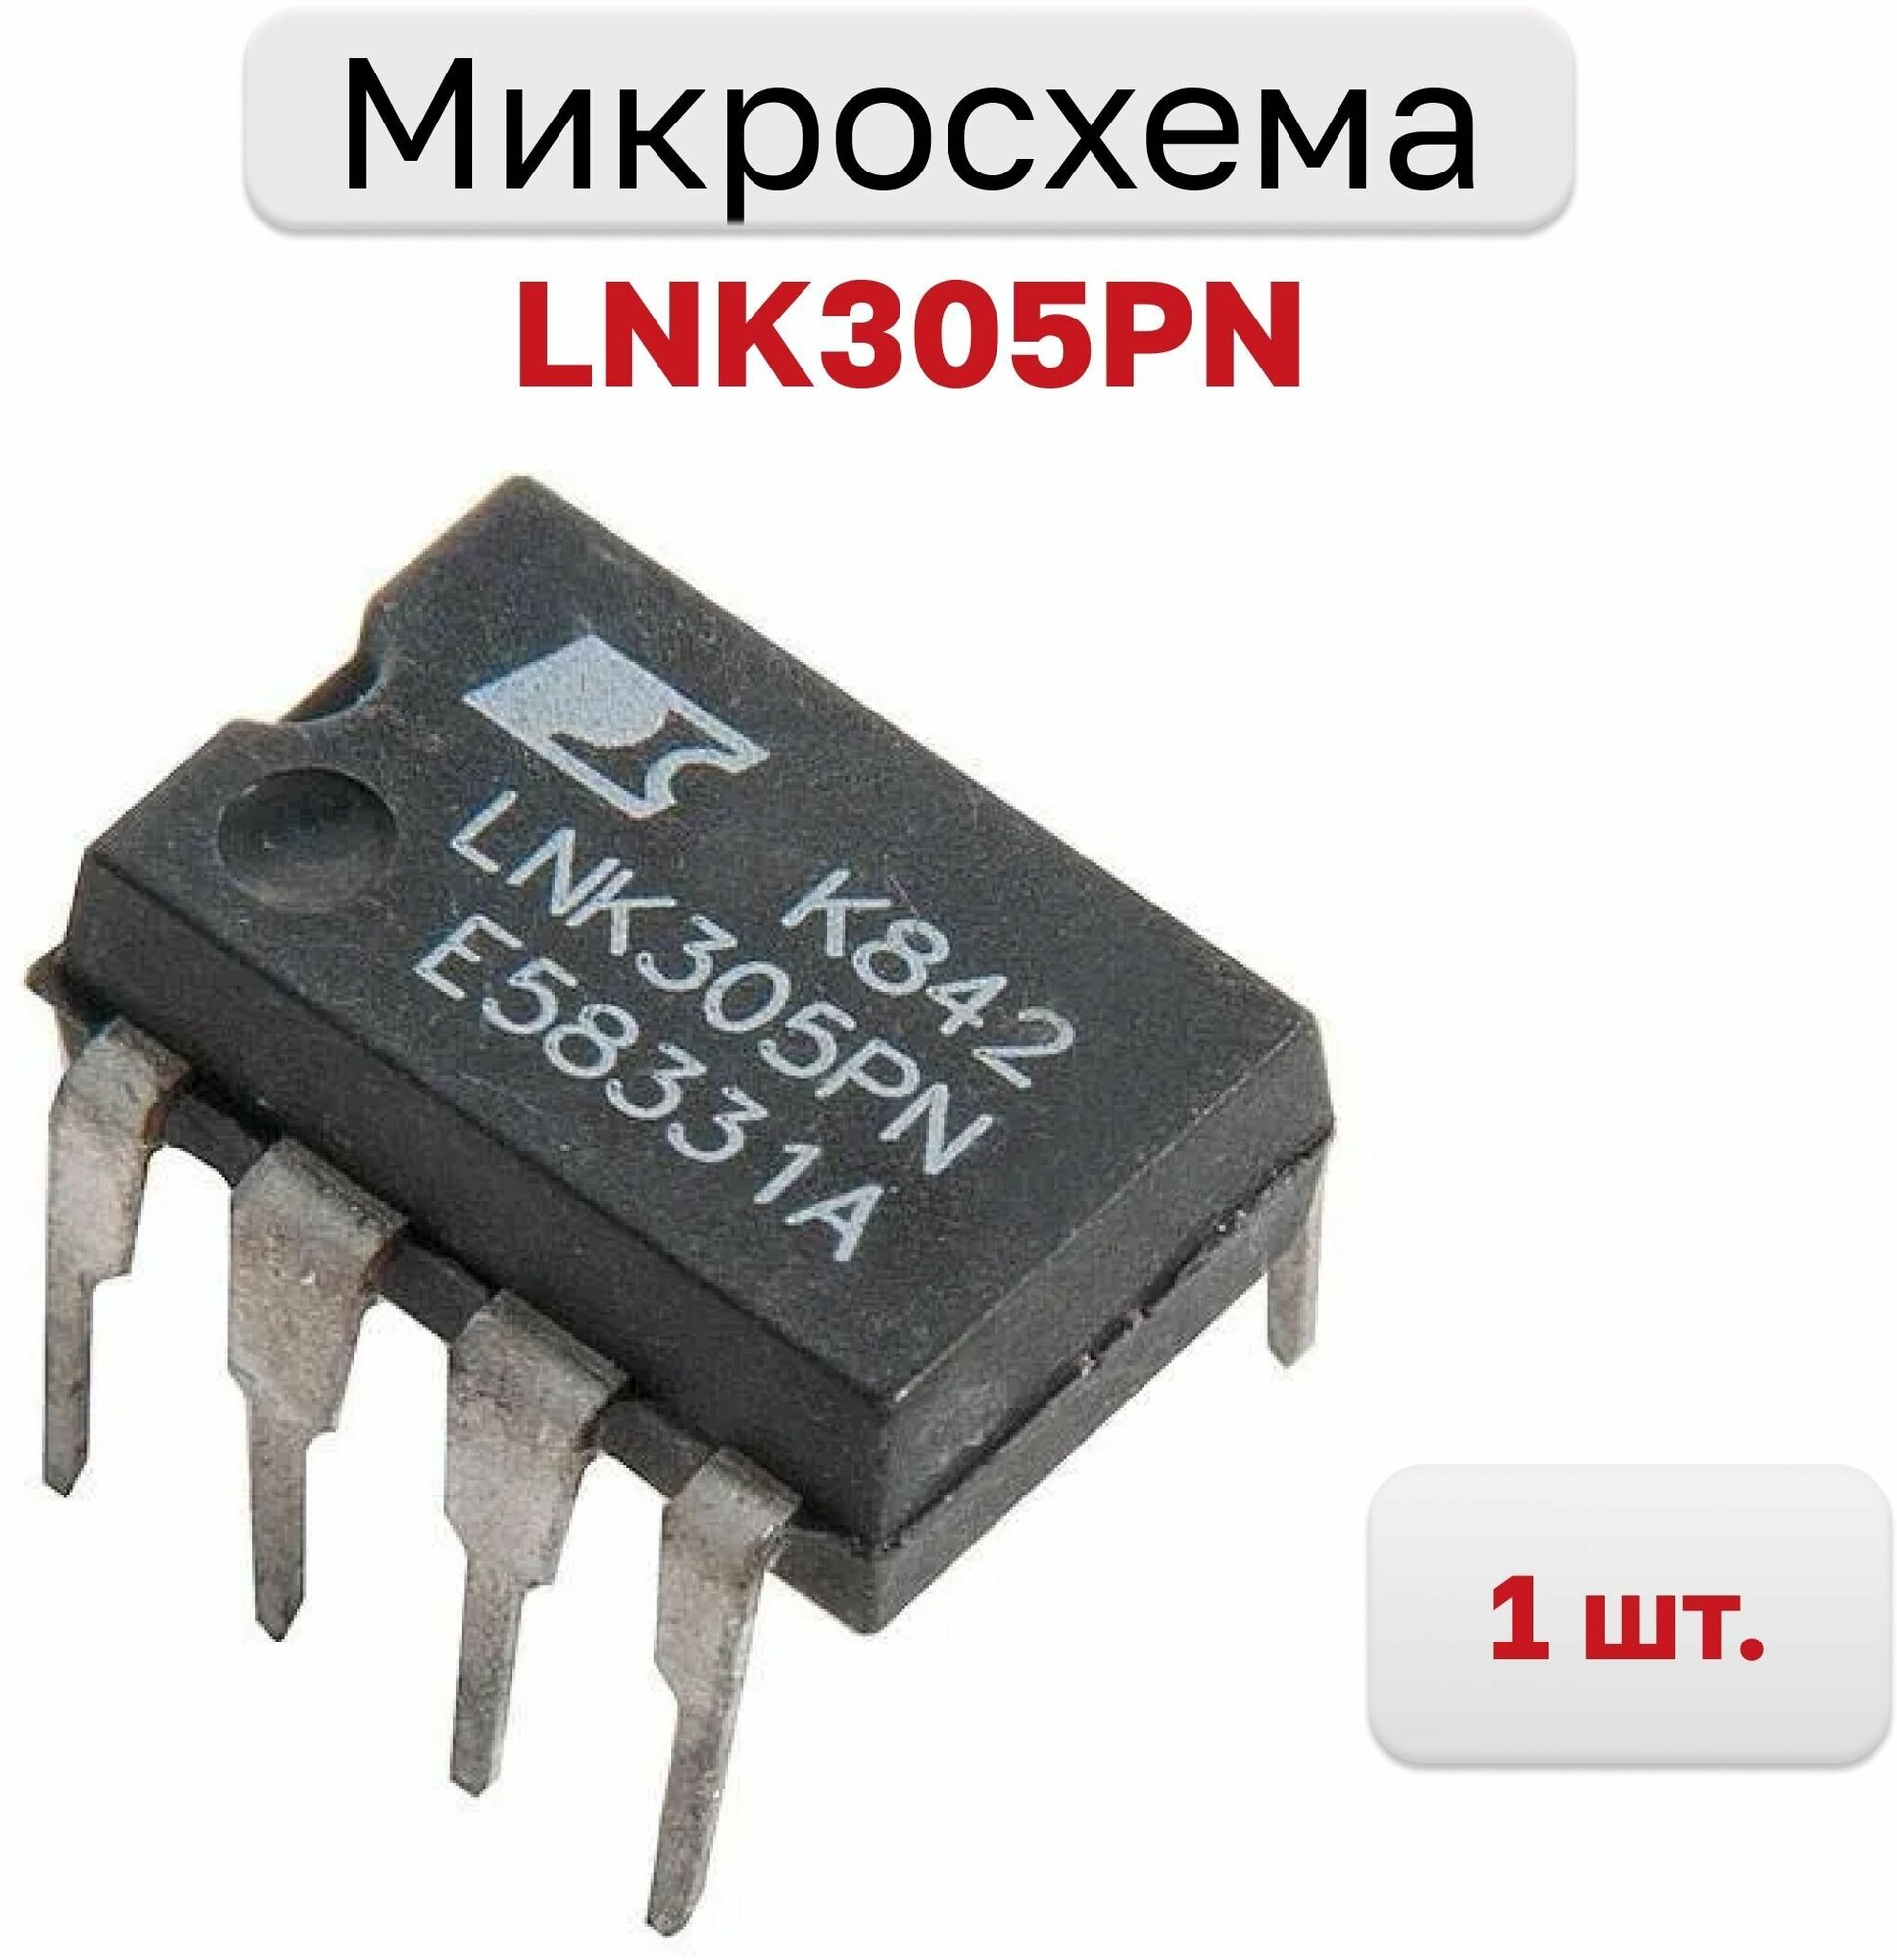 LNK305PN